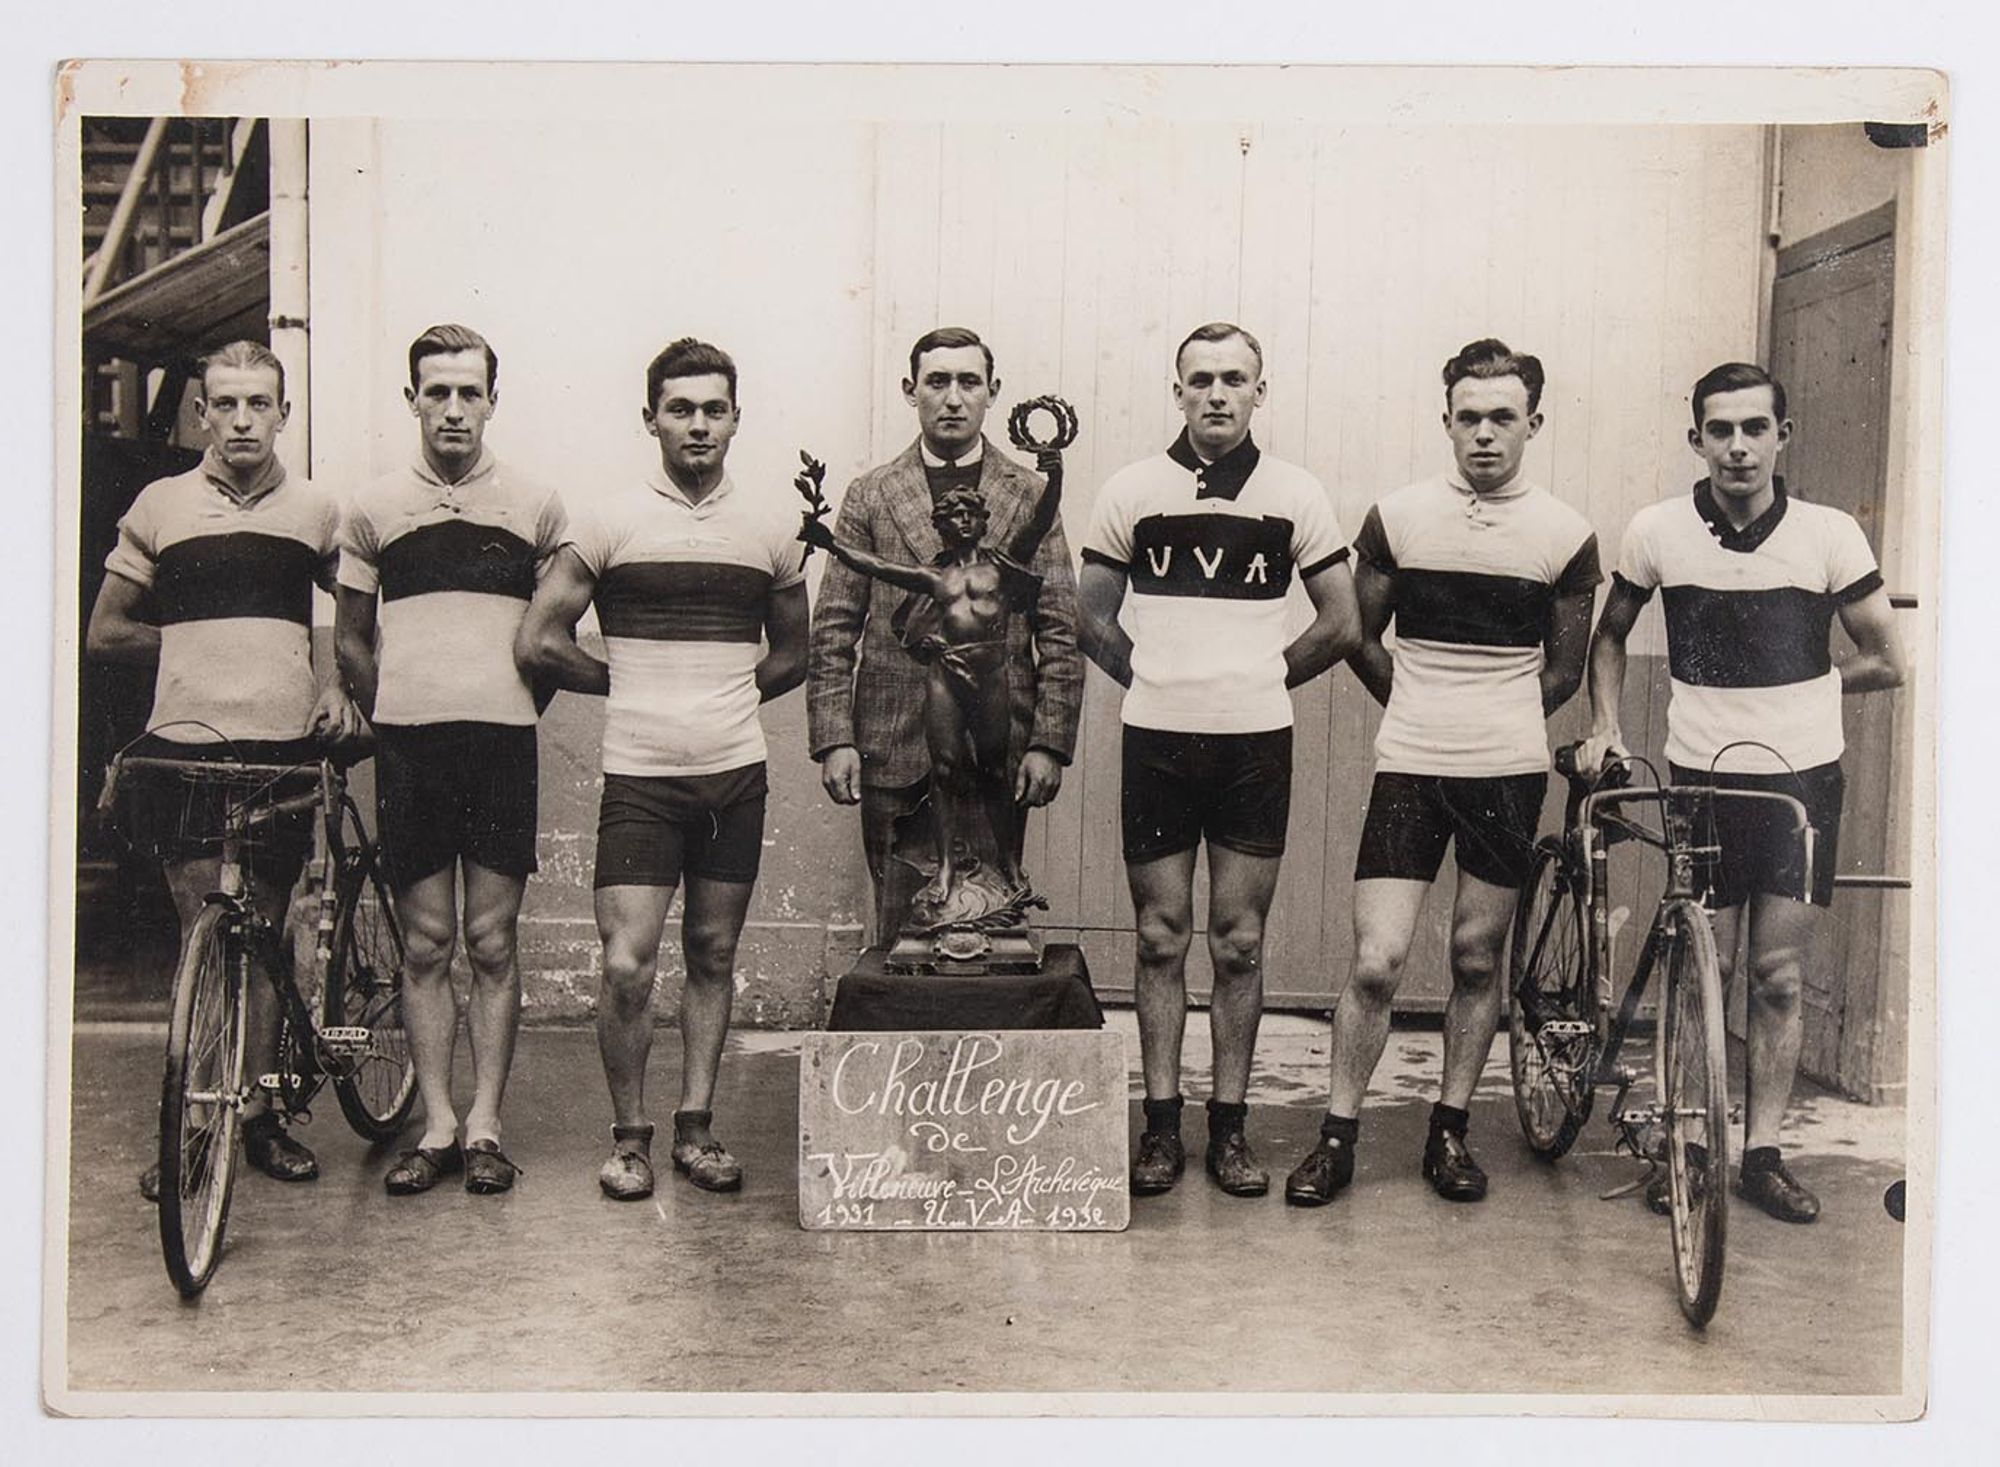 1932. Un groupe de coureurs cyclistes de l'Union Vélo Aube (U.V.A.) pose devant le trophée du challenge de Villeneuve-L'Archevêque (Yonne). Lieu à identifier.